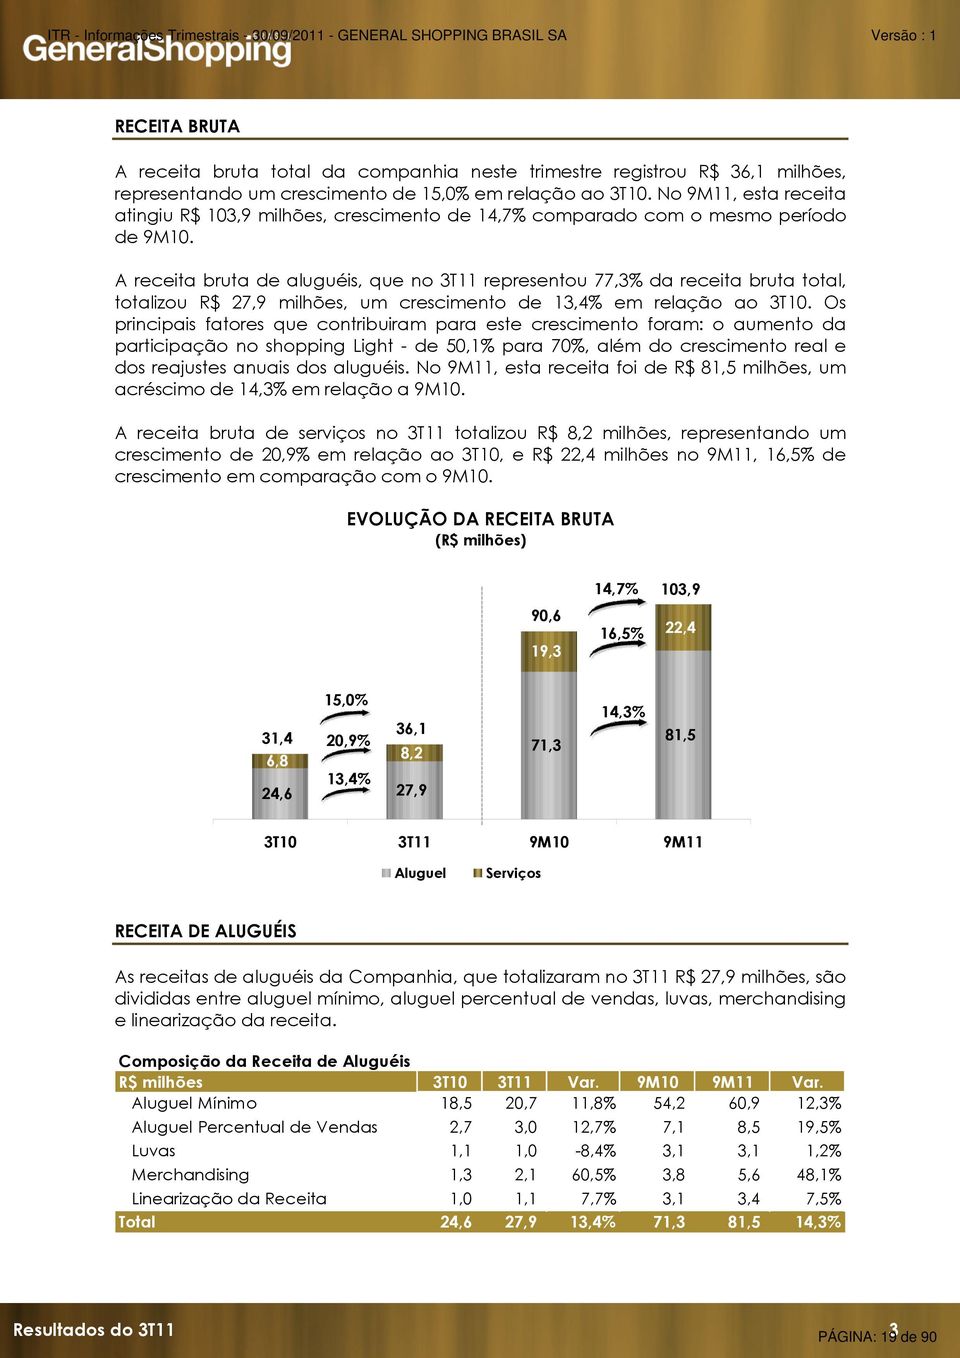 A receita bruta de aluguéis, que no 3T11 representou 77,3% da receita bruta total, totalizou R$ 27,9 milhões, um crescimento de 13,4% em relação ao 3T10.